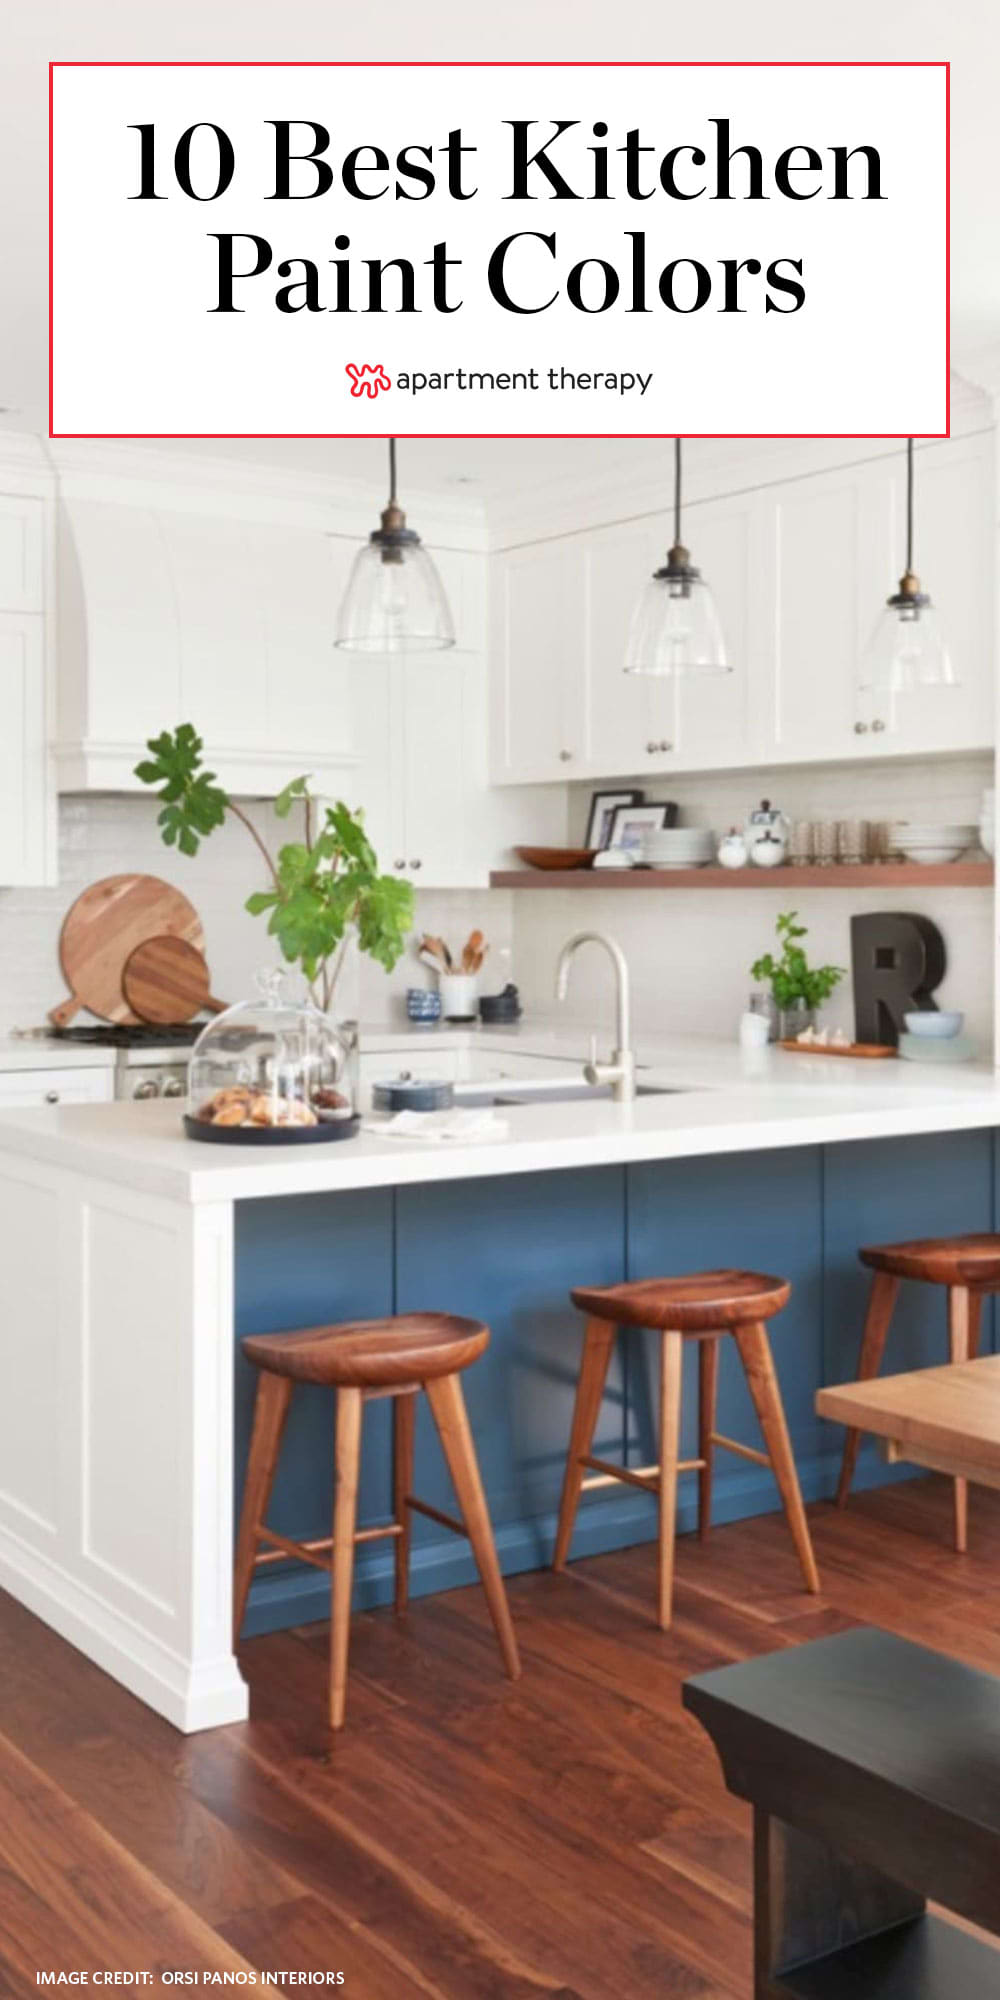 20 Best Kitchen Paint Ideas   What Colors to Paint a Kitchen ...